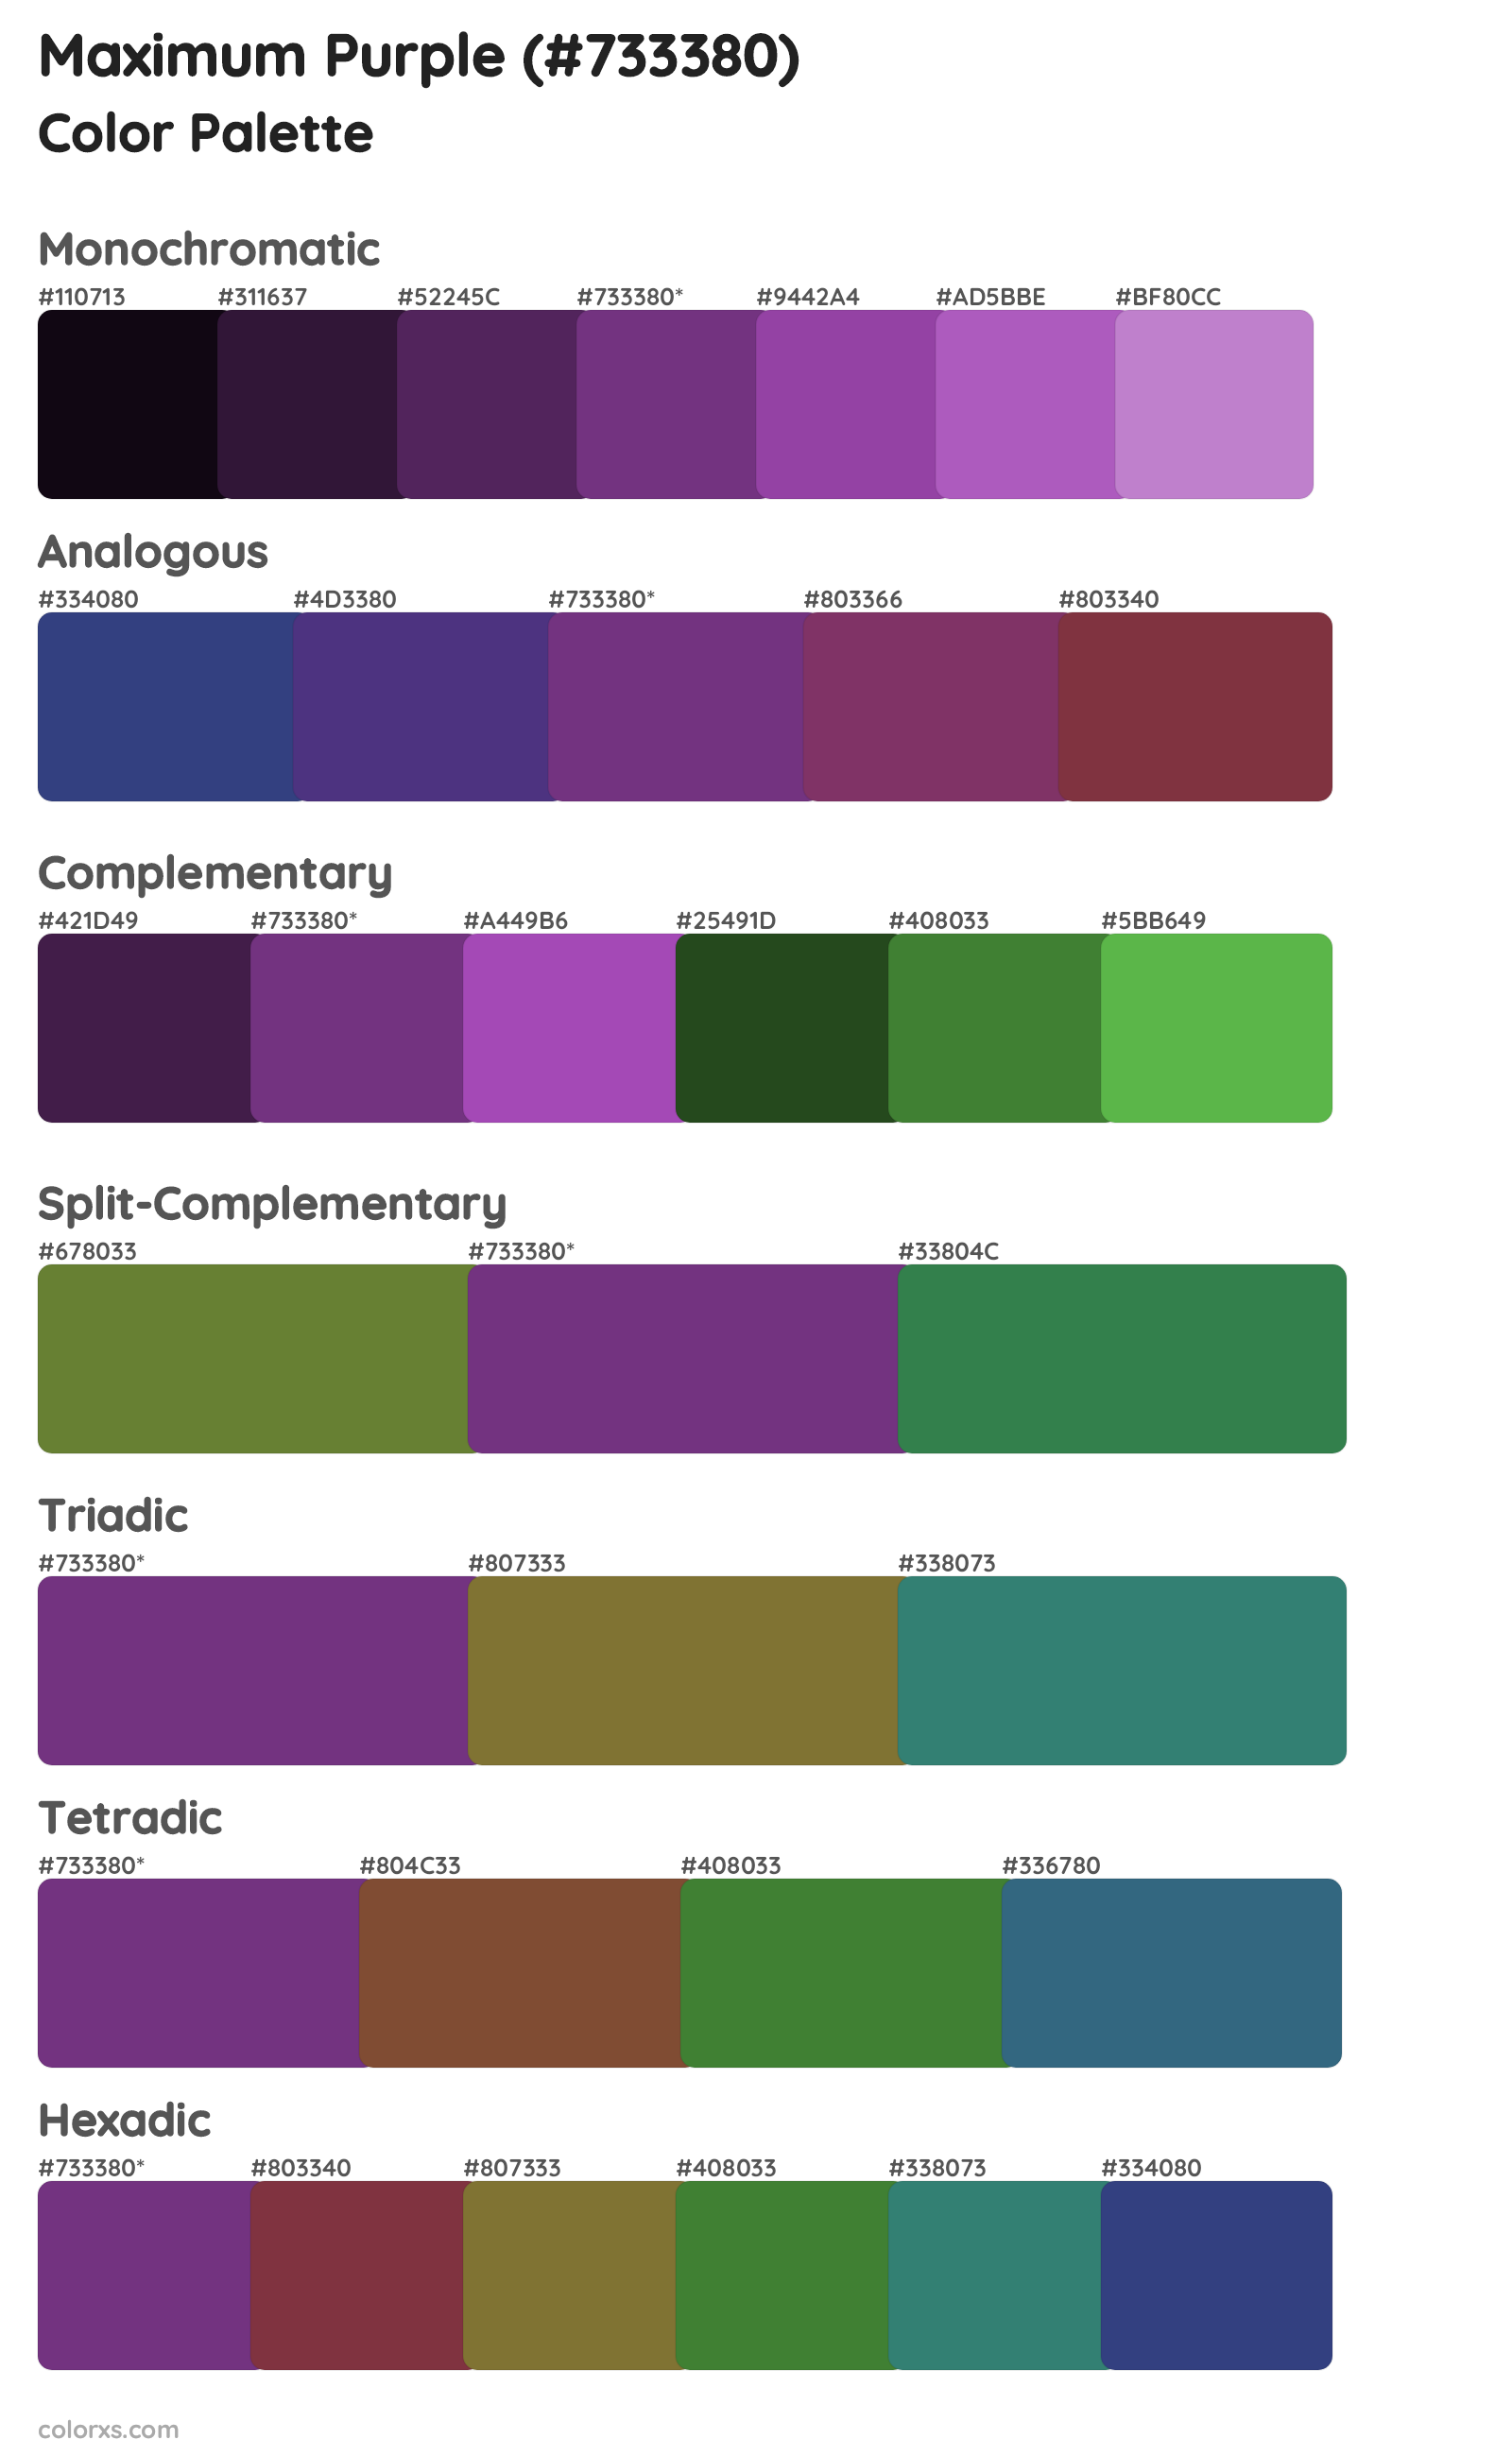 Maximum Purple Color Scheme Palettes